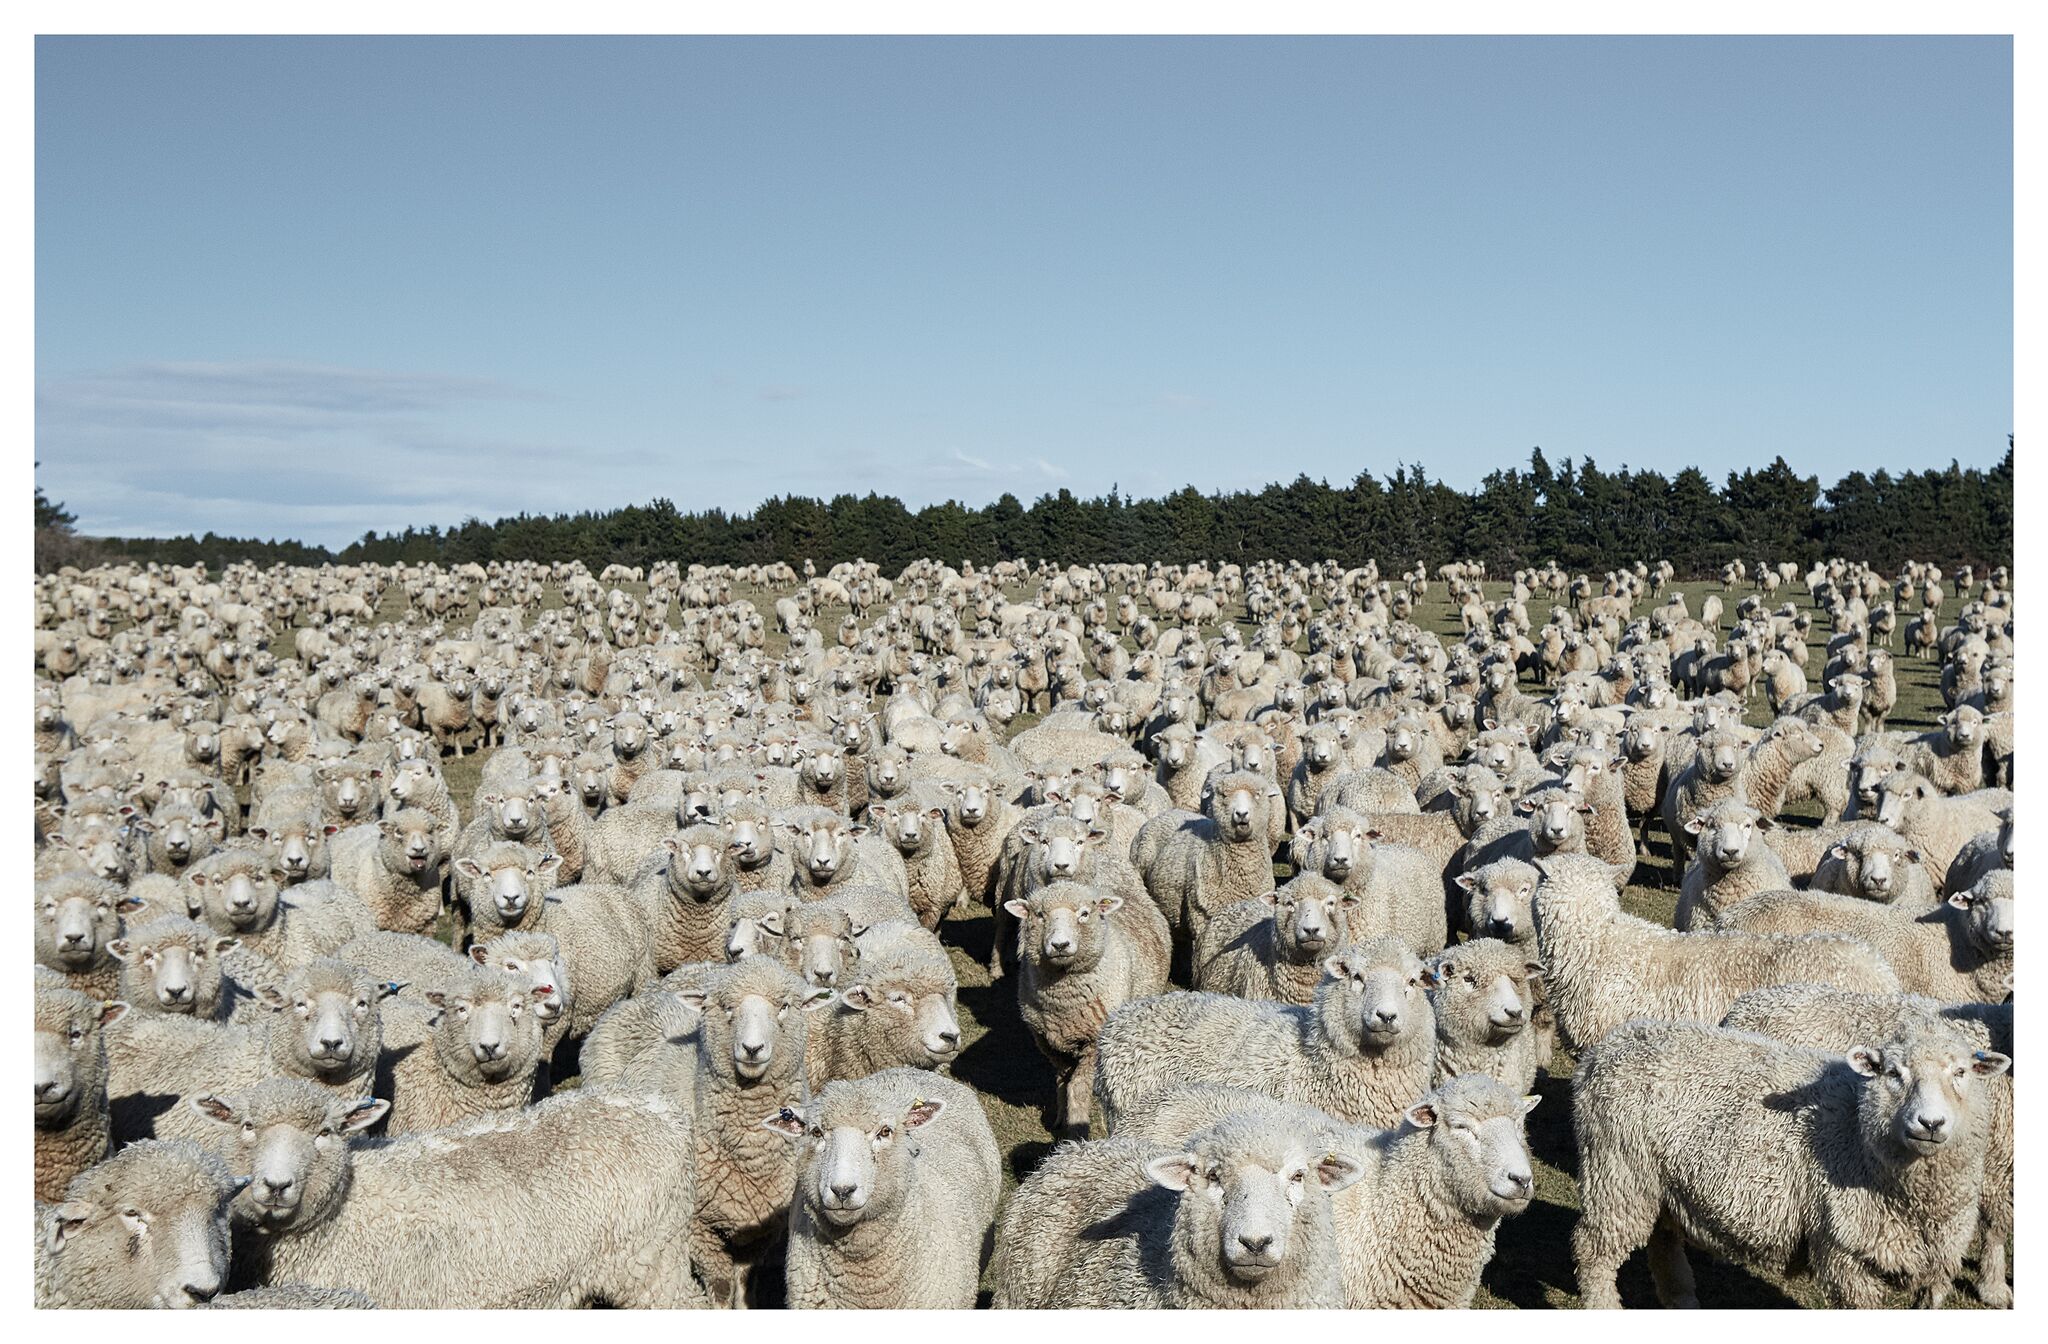 Farmland (and sheep) in New Zealand, courtesy Jose Ahedo